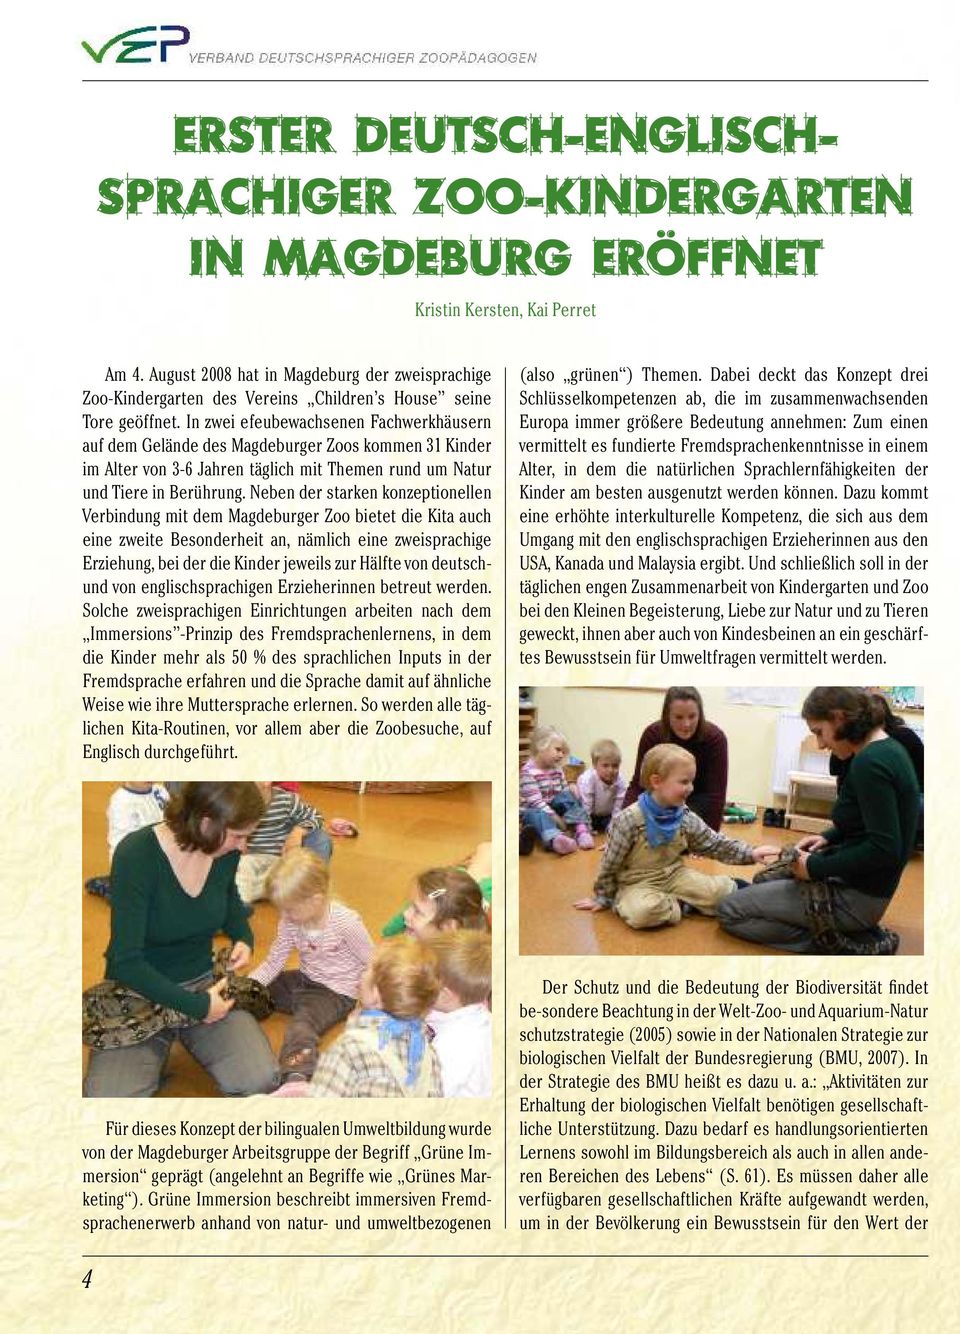 In zwei efeubewachsenen Fachwerkhäusern auf dem Gelände des Magdeburger Zoos kommen 31 Kinder im Alter von 3-6 Jahren täglich mit Themen rund um Natur und Tiere in Berührung.